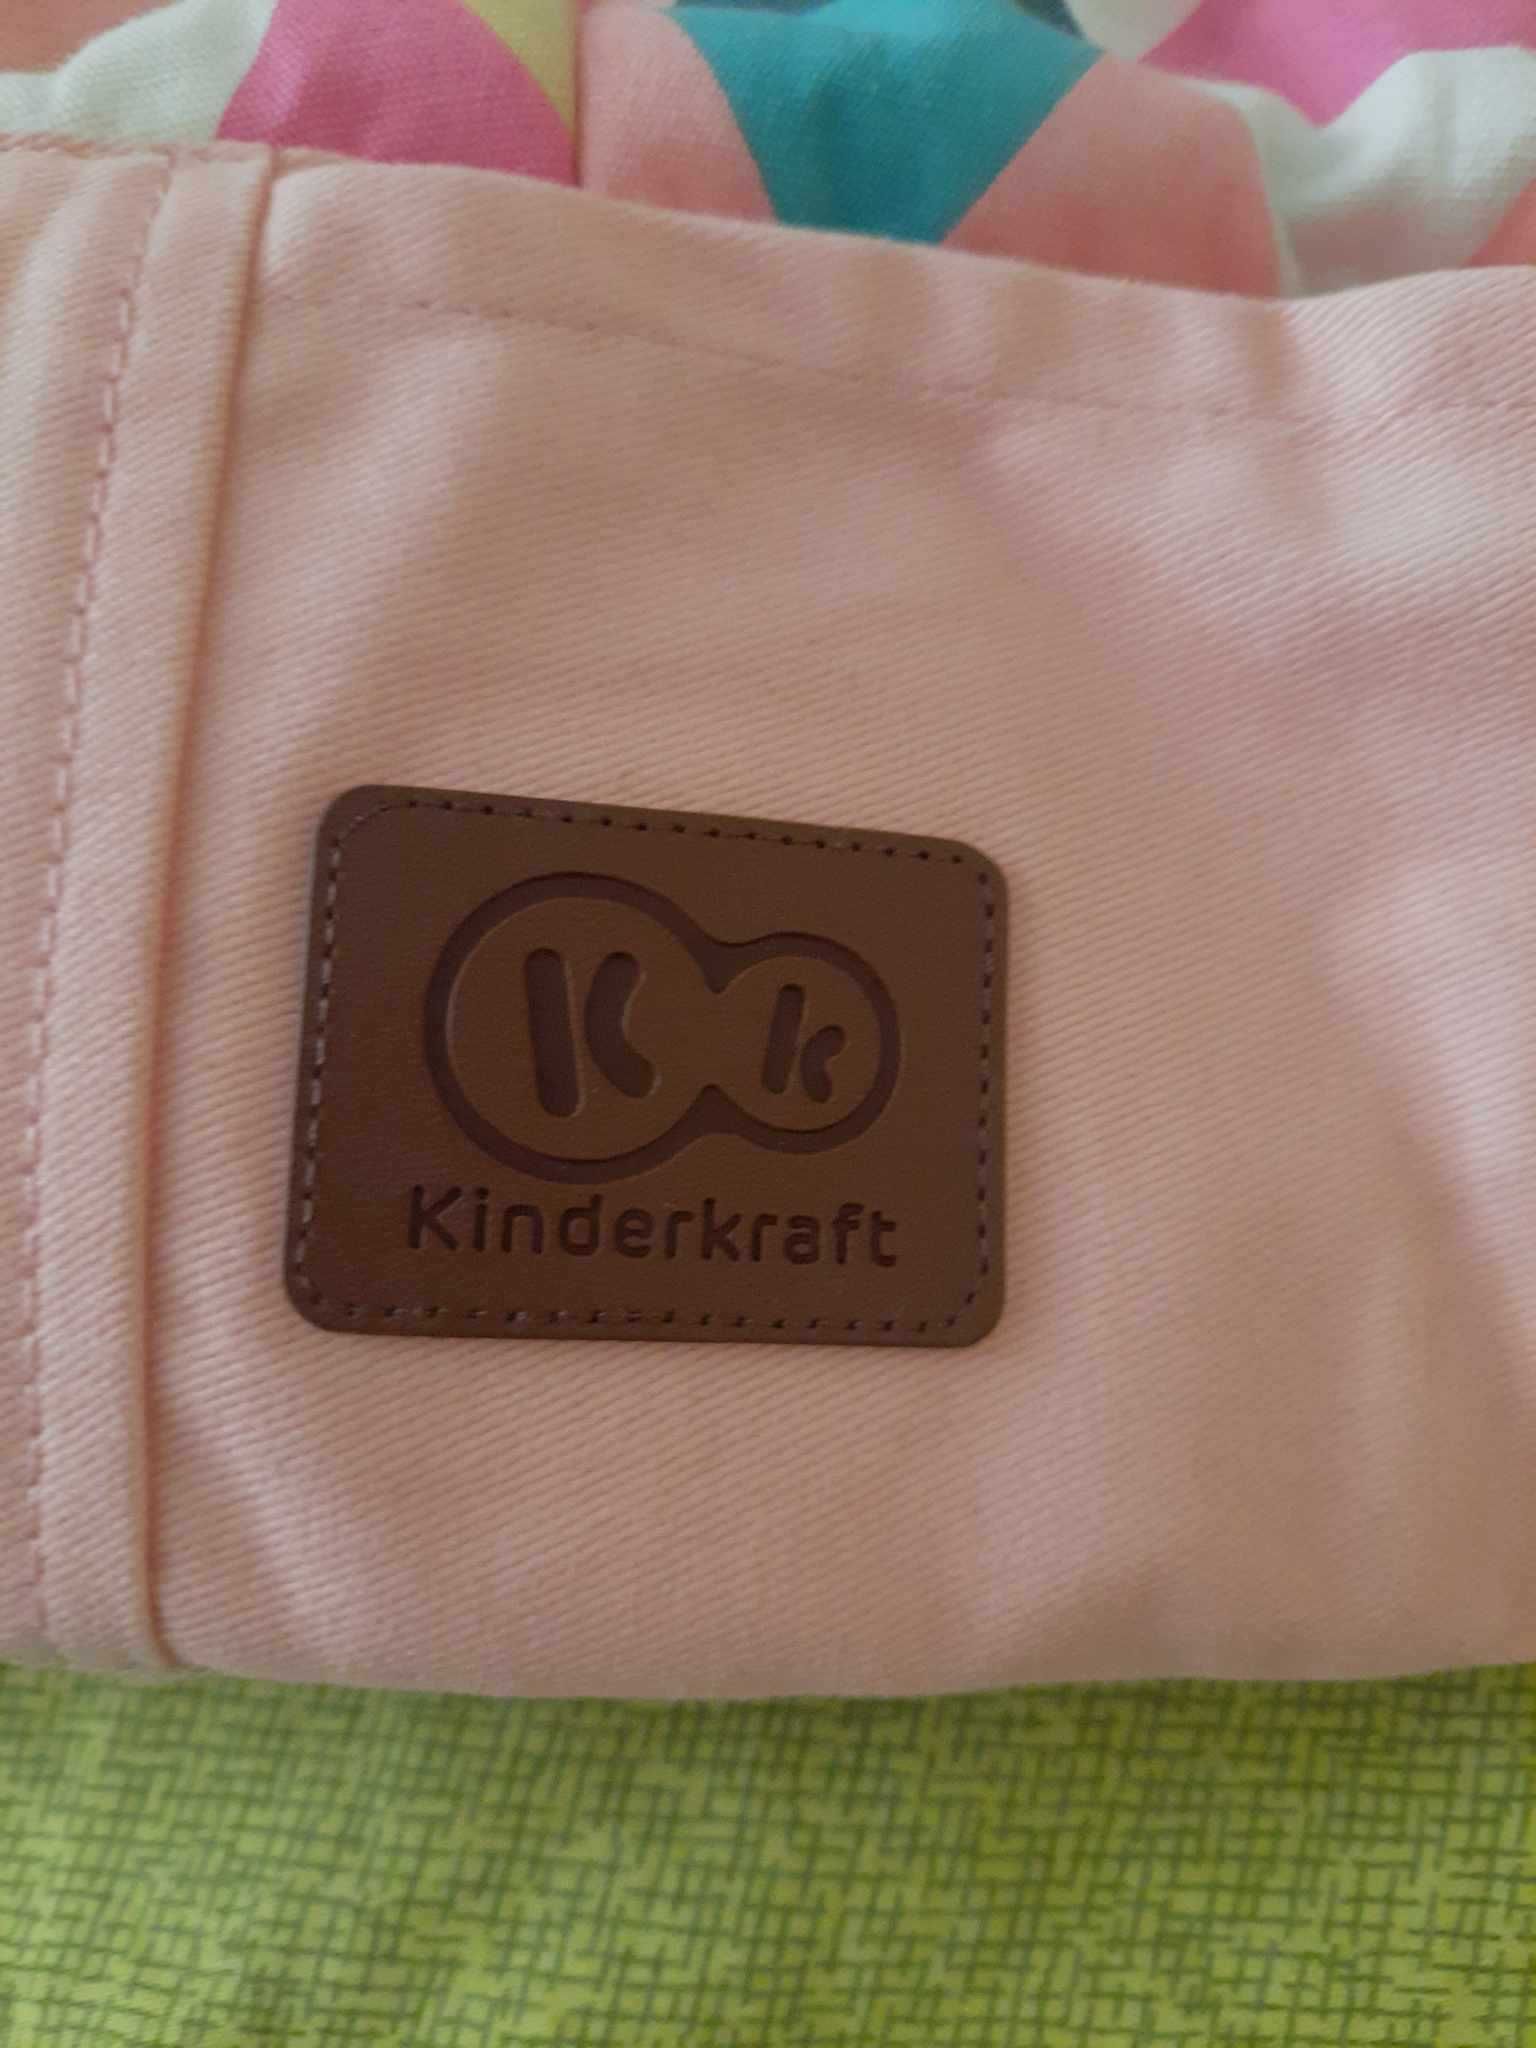 Nosidełko Nino Pink / Kinderkraft od 3 miesięcy do 20 kg